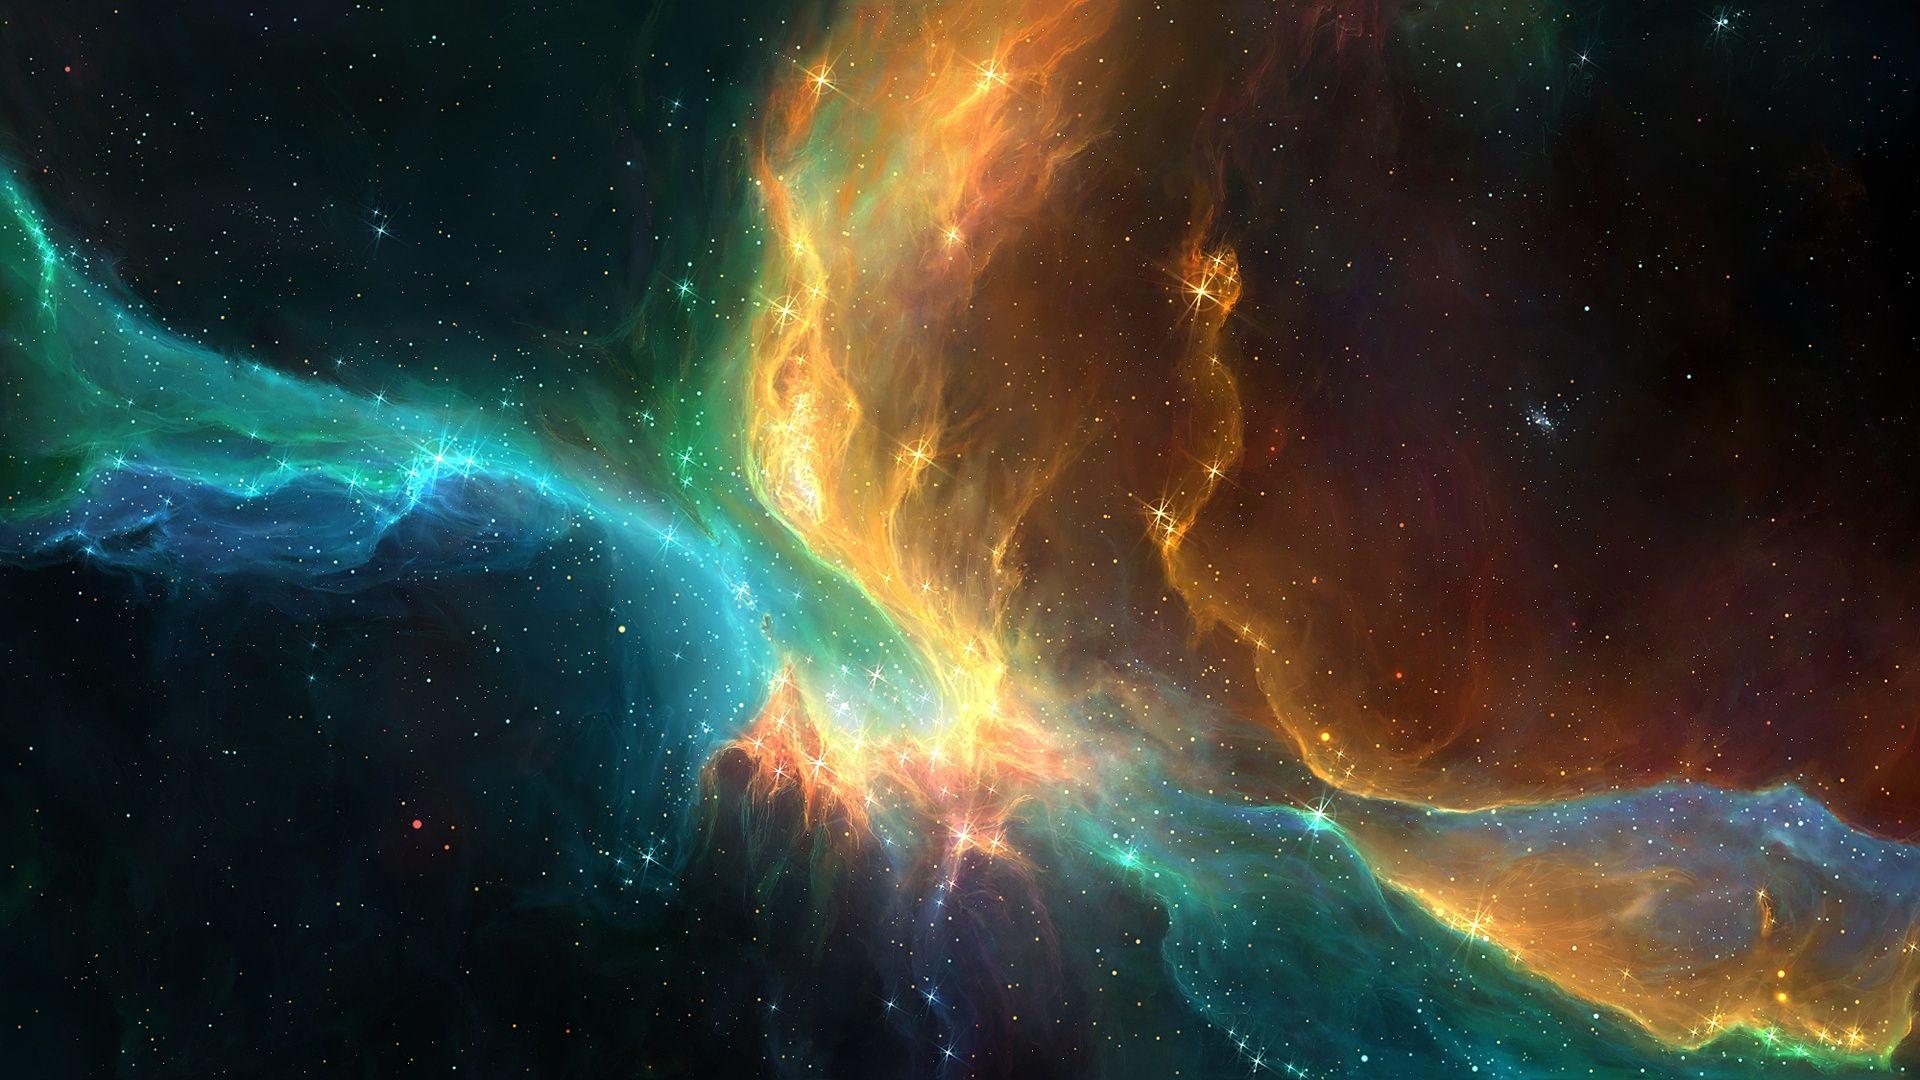 Wallpaper.wiki Wonderful Nebula Galaxy 1080p Space Background PIC